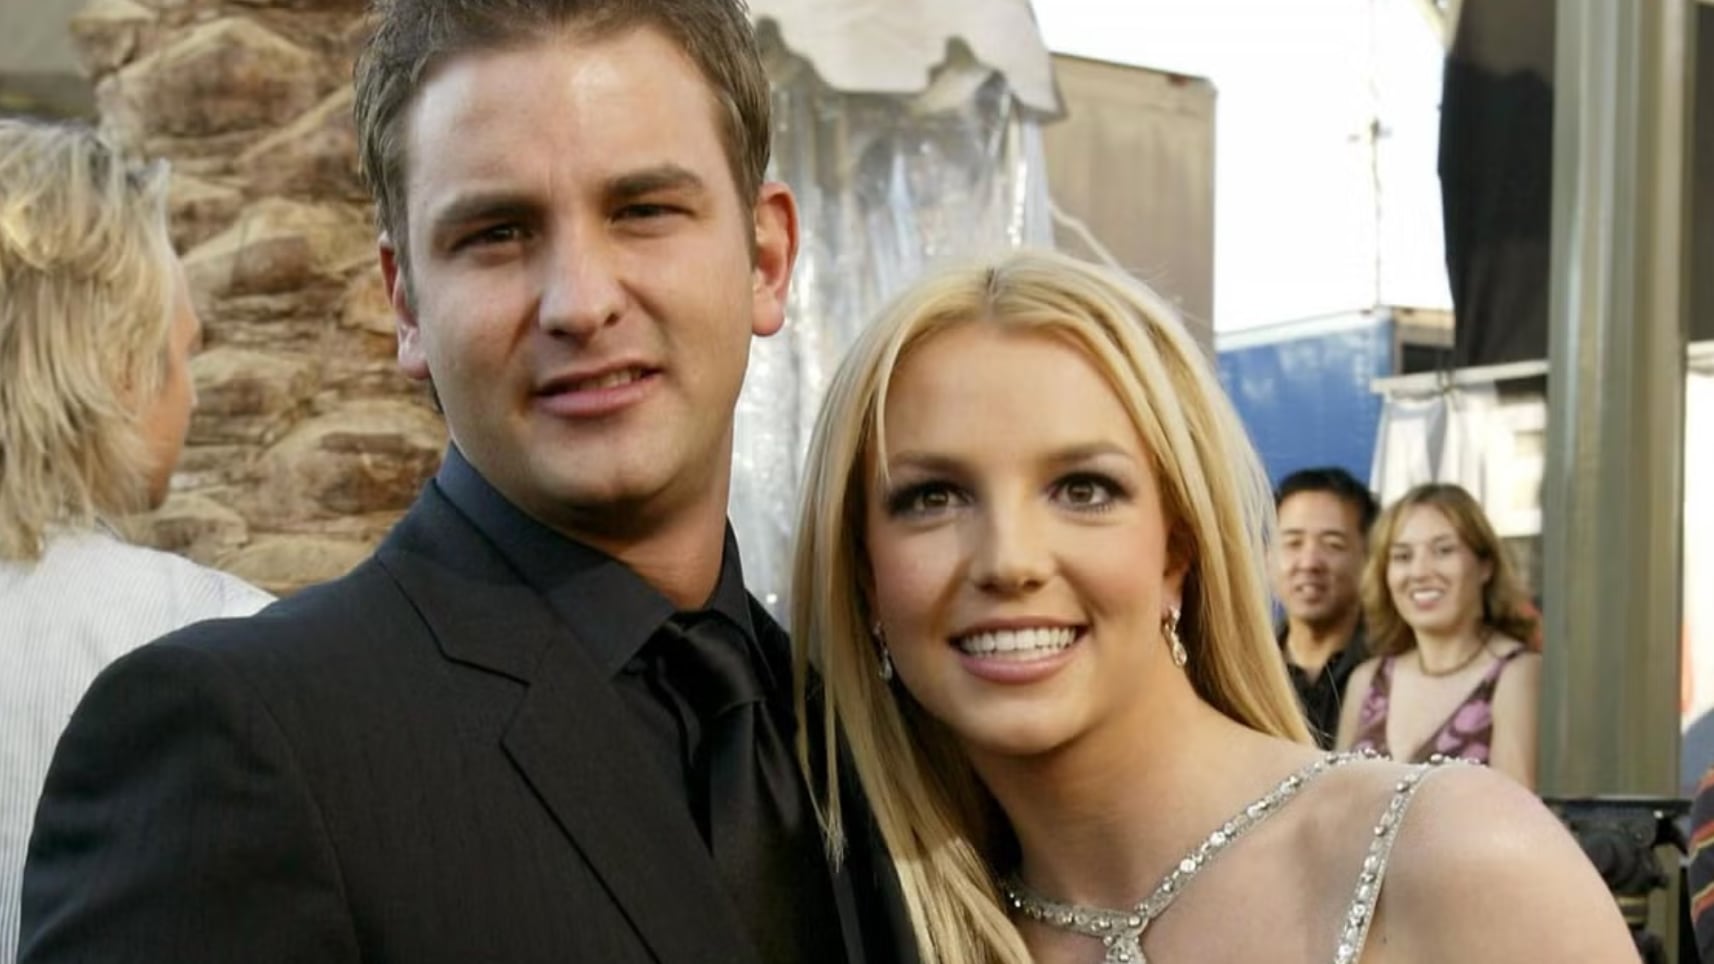 Bryan ha apoyado mucho a Britney